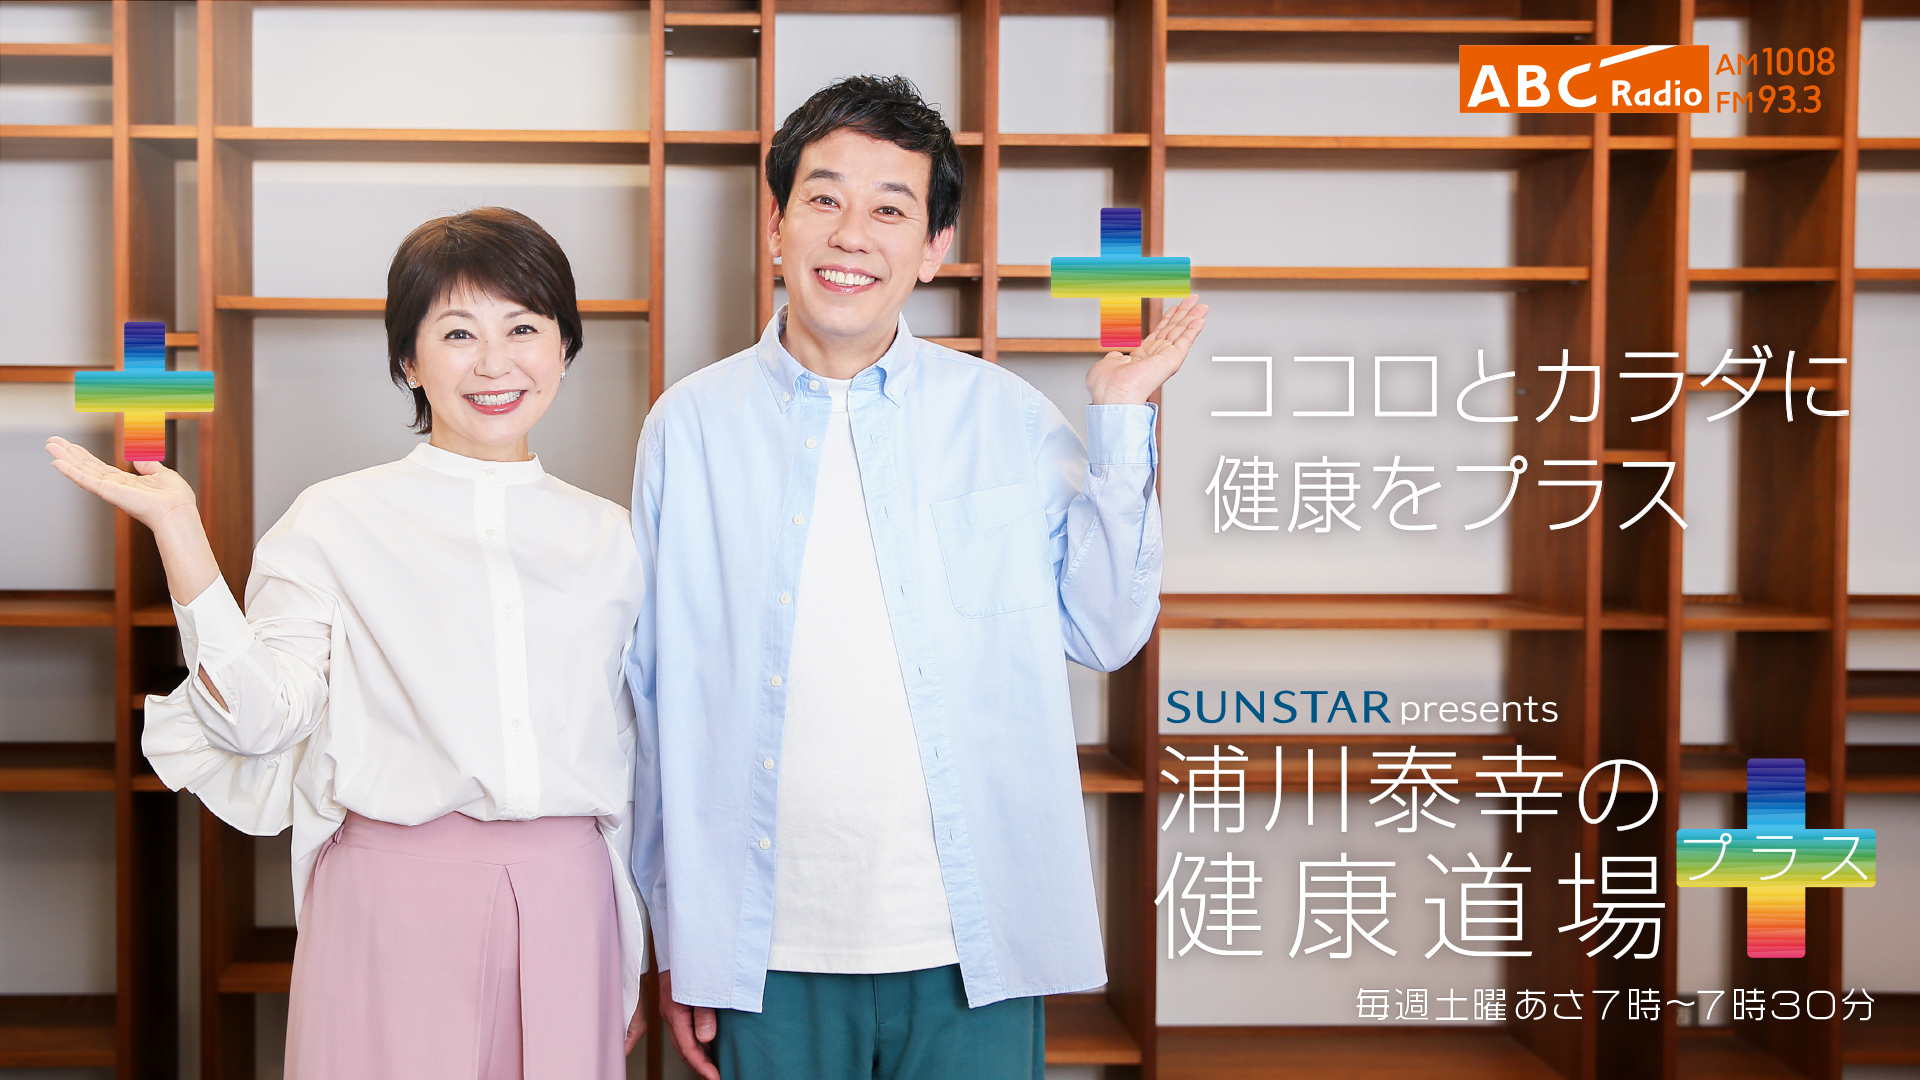 Sunstar presents 浦川泰幸の健康道場プラス